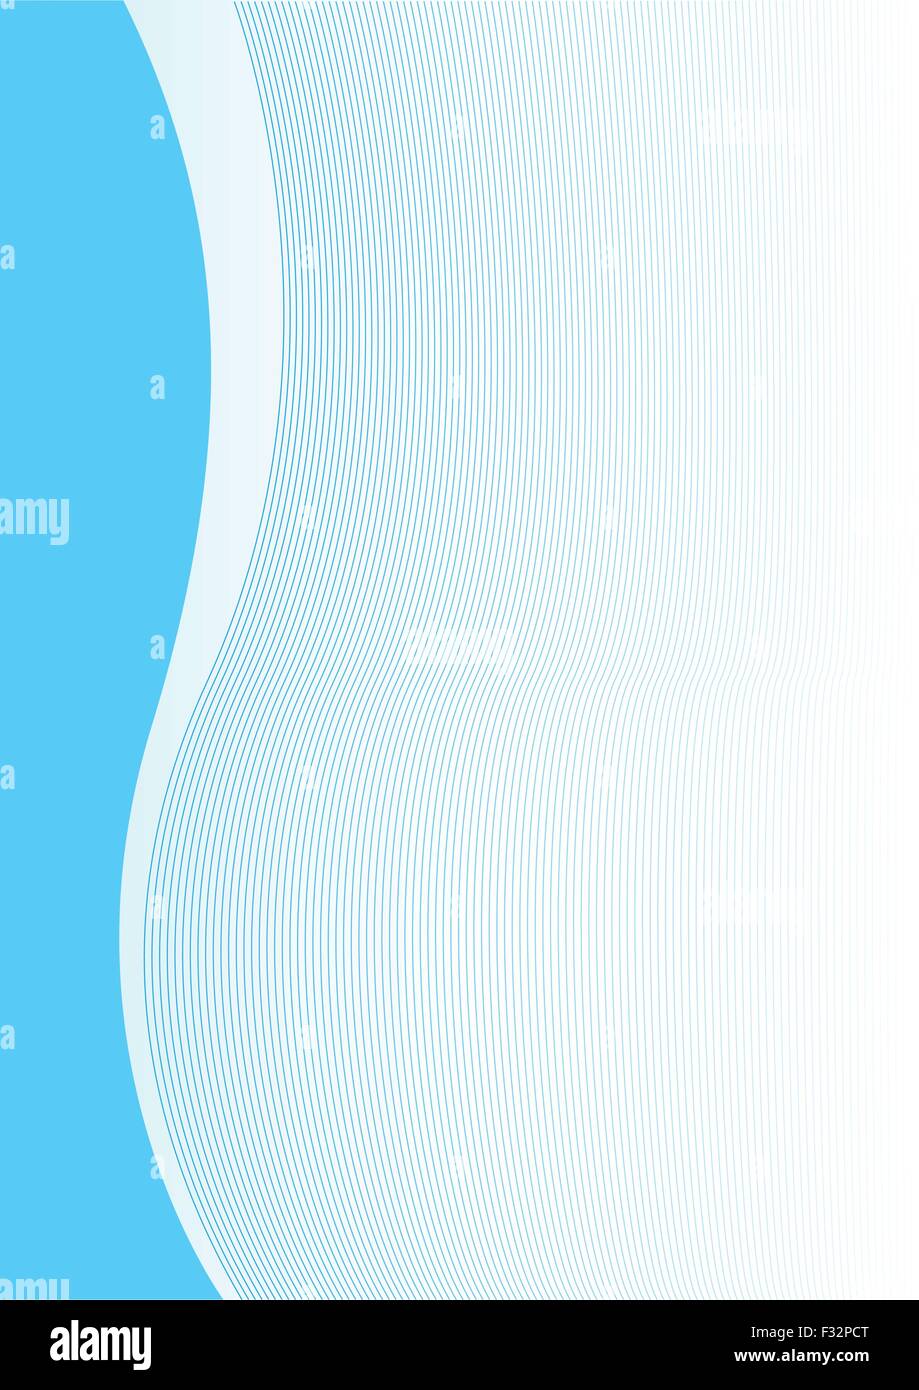 Simple abstract background verticale bleue pour la conception Illustration de Vecteur